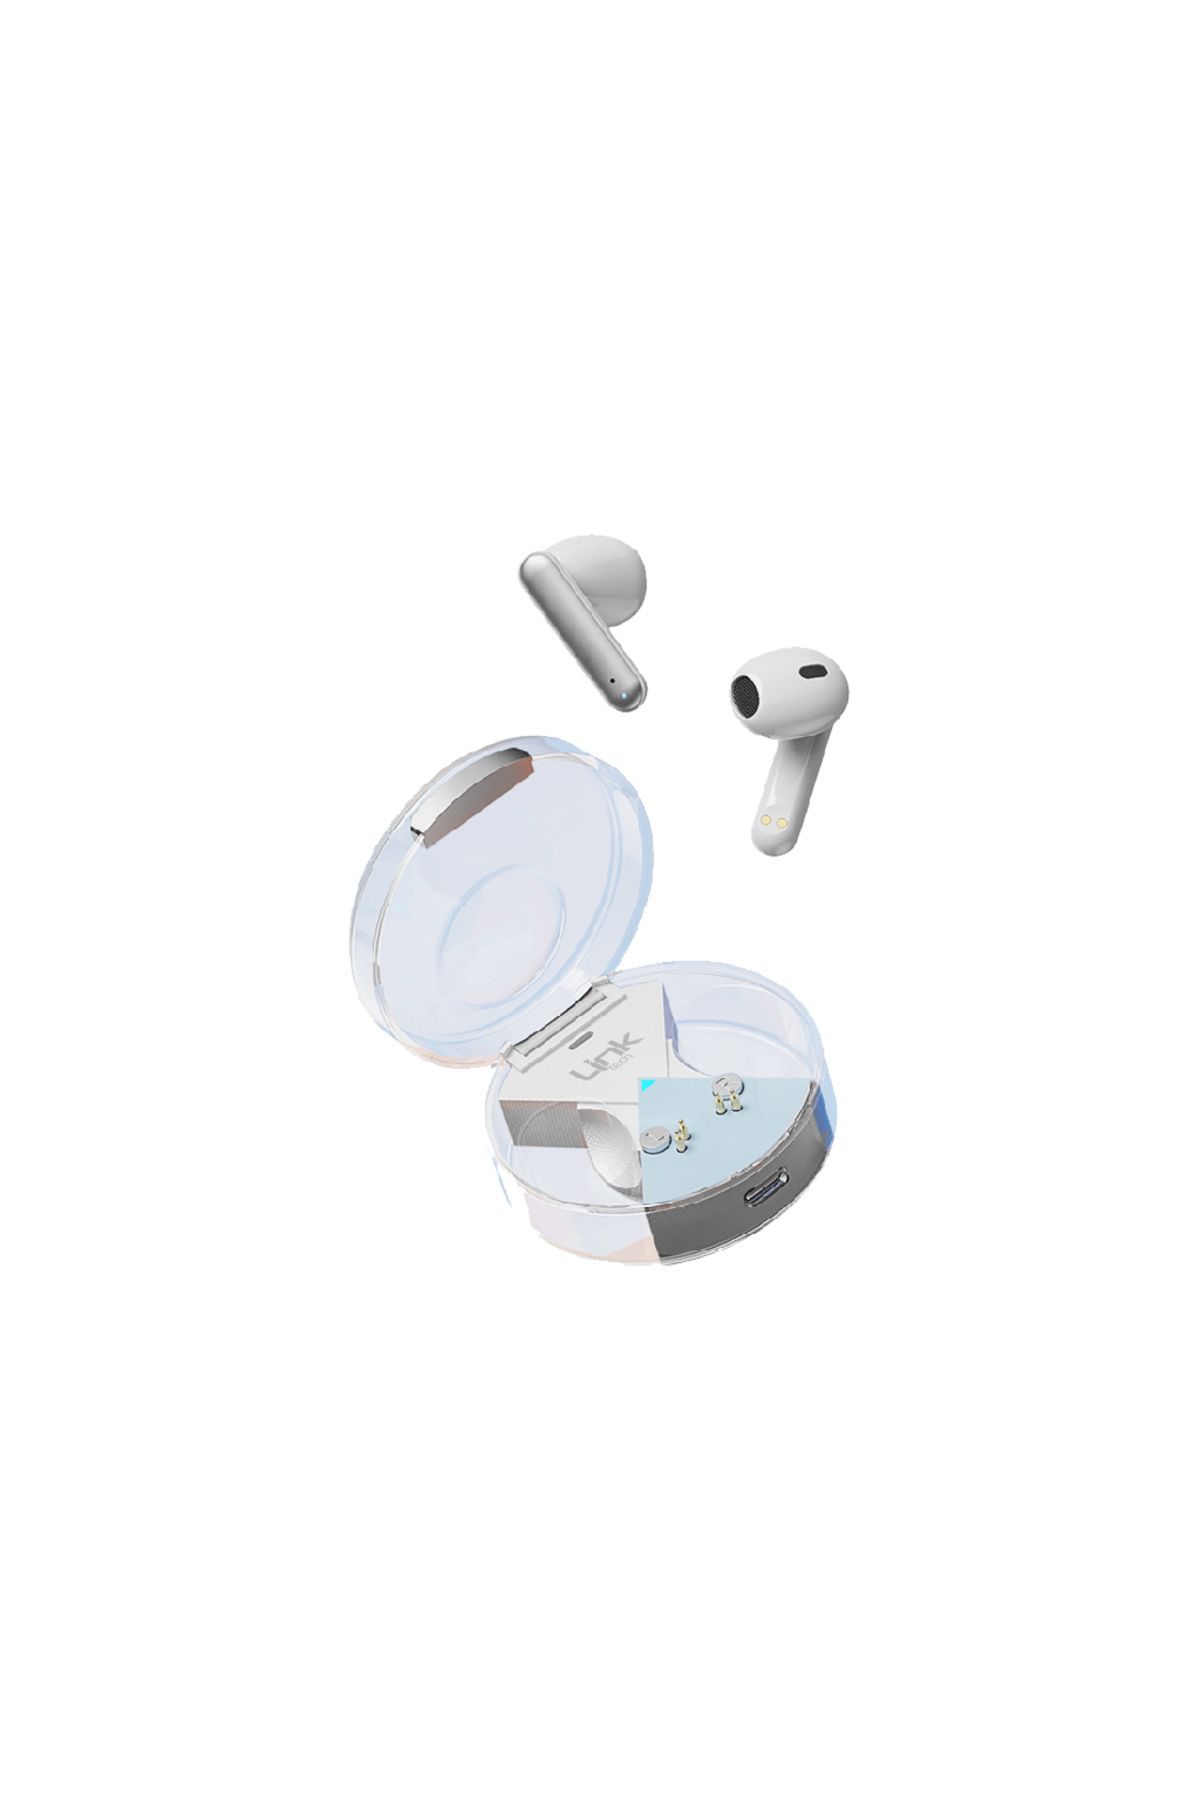 Linktech Link Tech C62 Tws Kablosuz Kulak Içi Bluetooth Kulaklık Şeffaf Tasarım